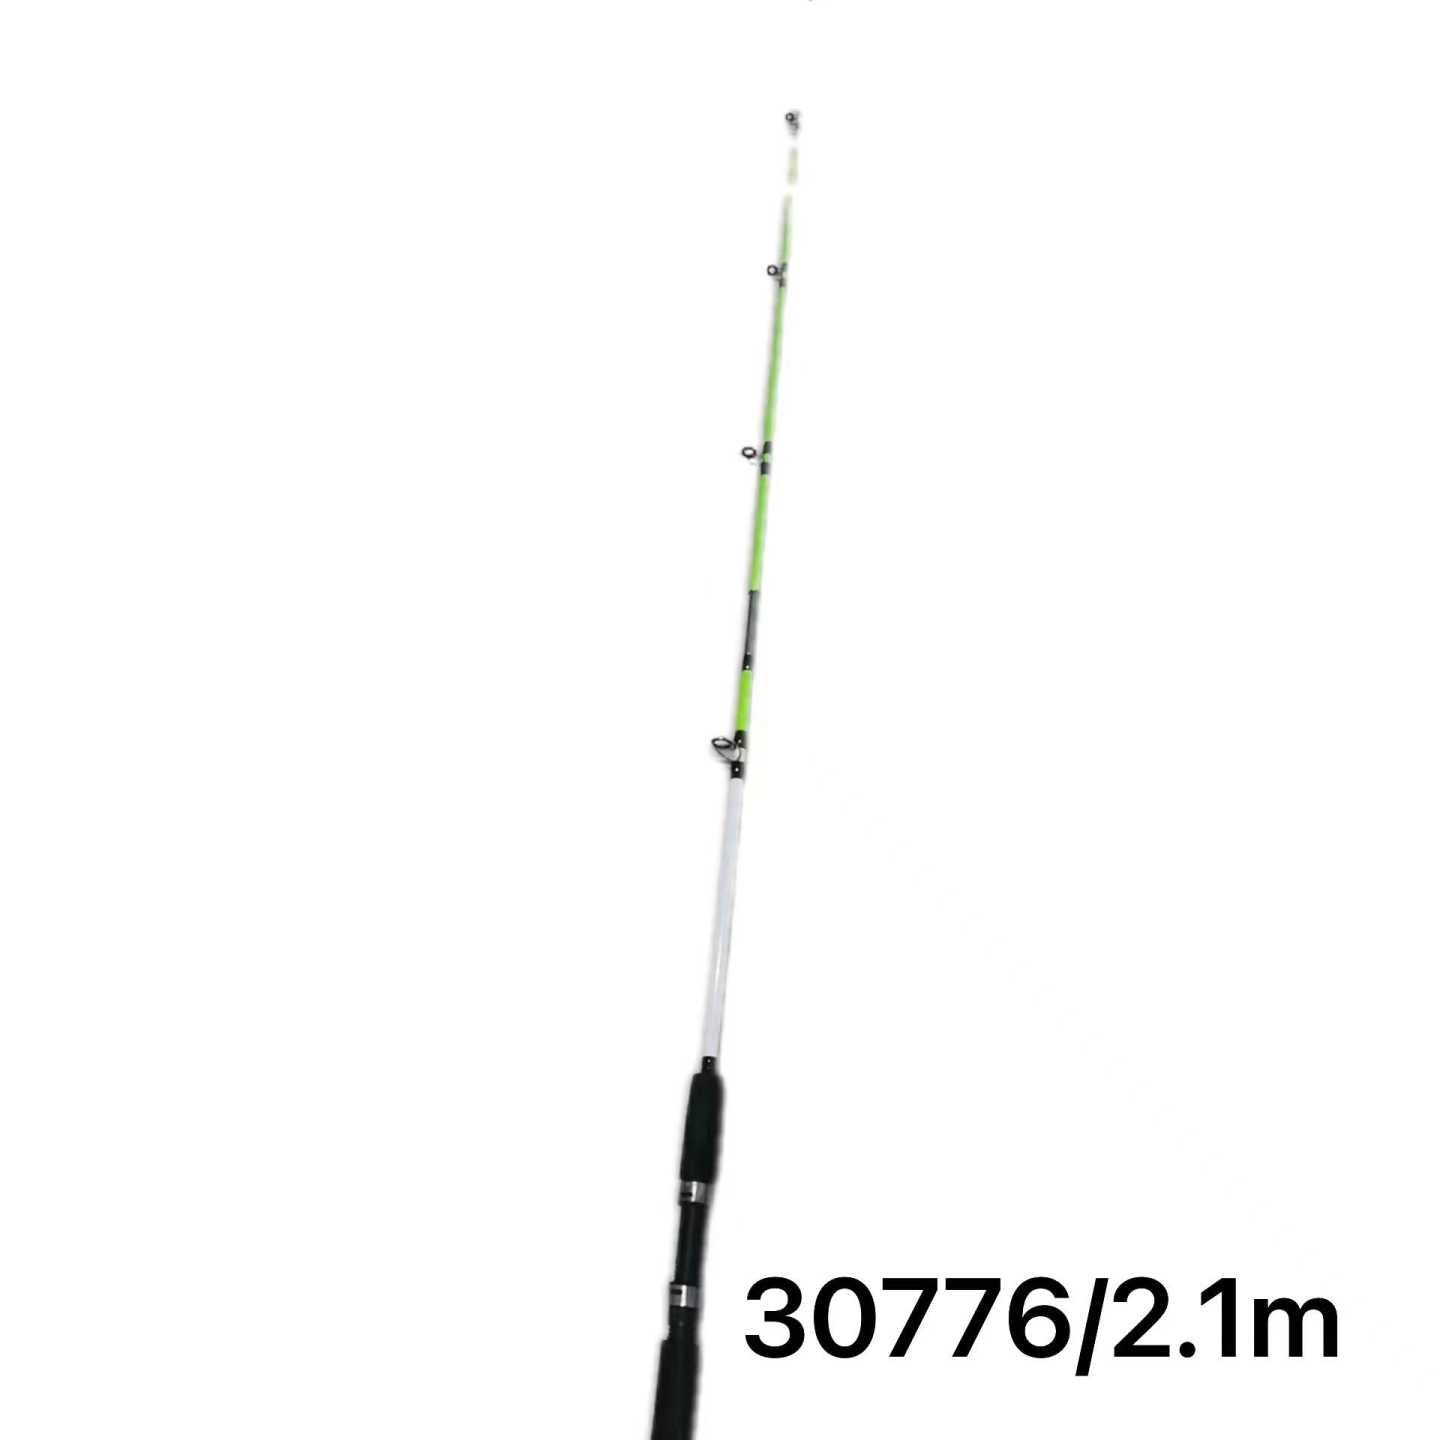 Fishing rod - 2.1m - 30776